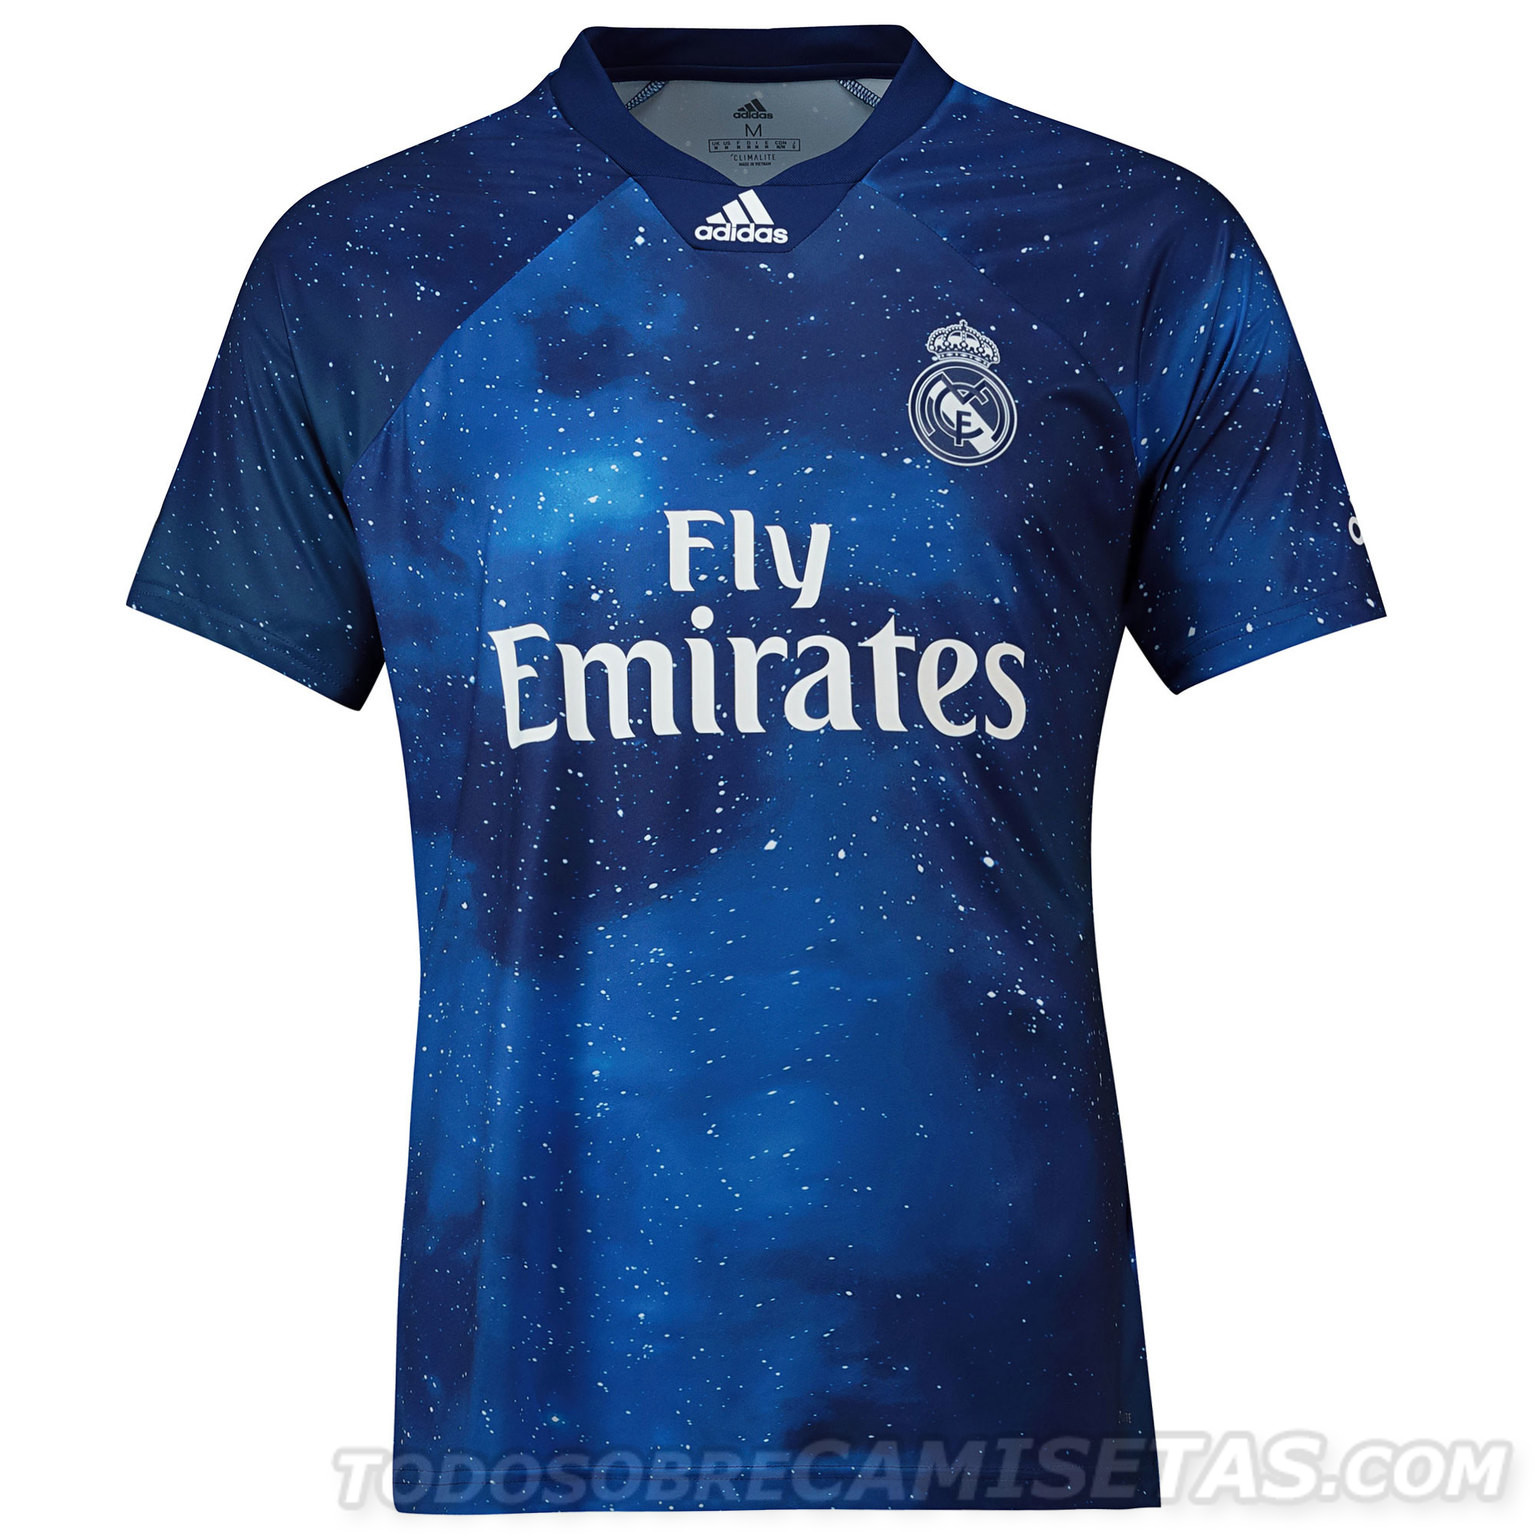 Real Madrid FIFA 19 adidas Digital Kit